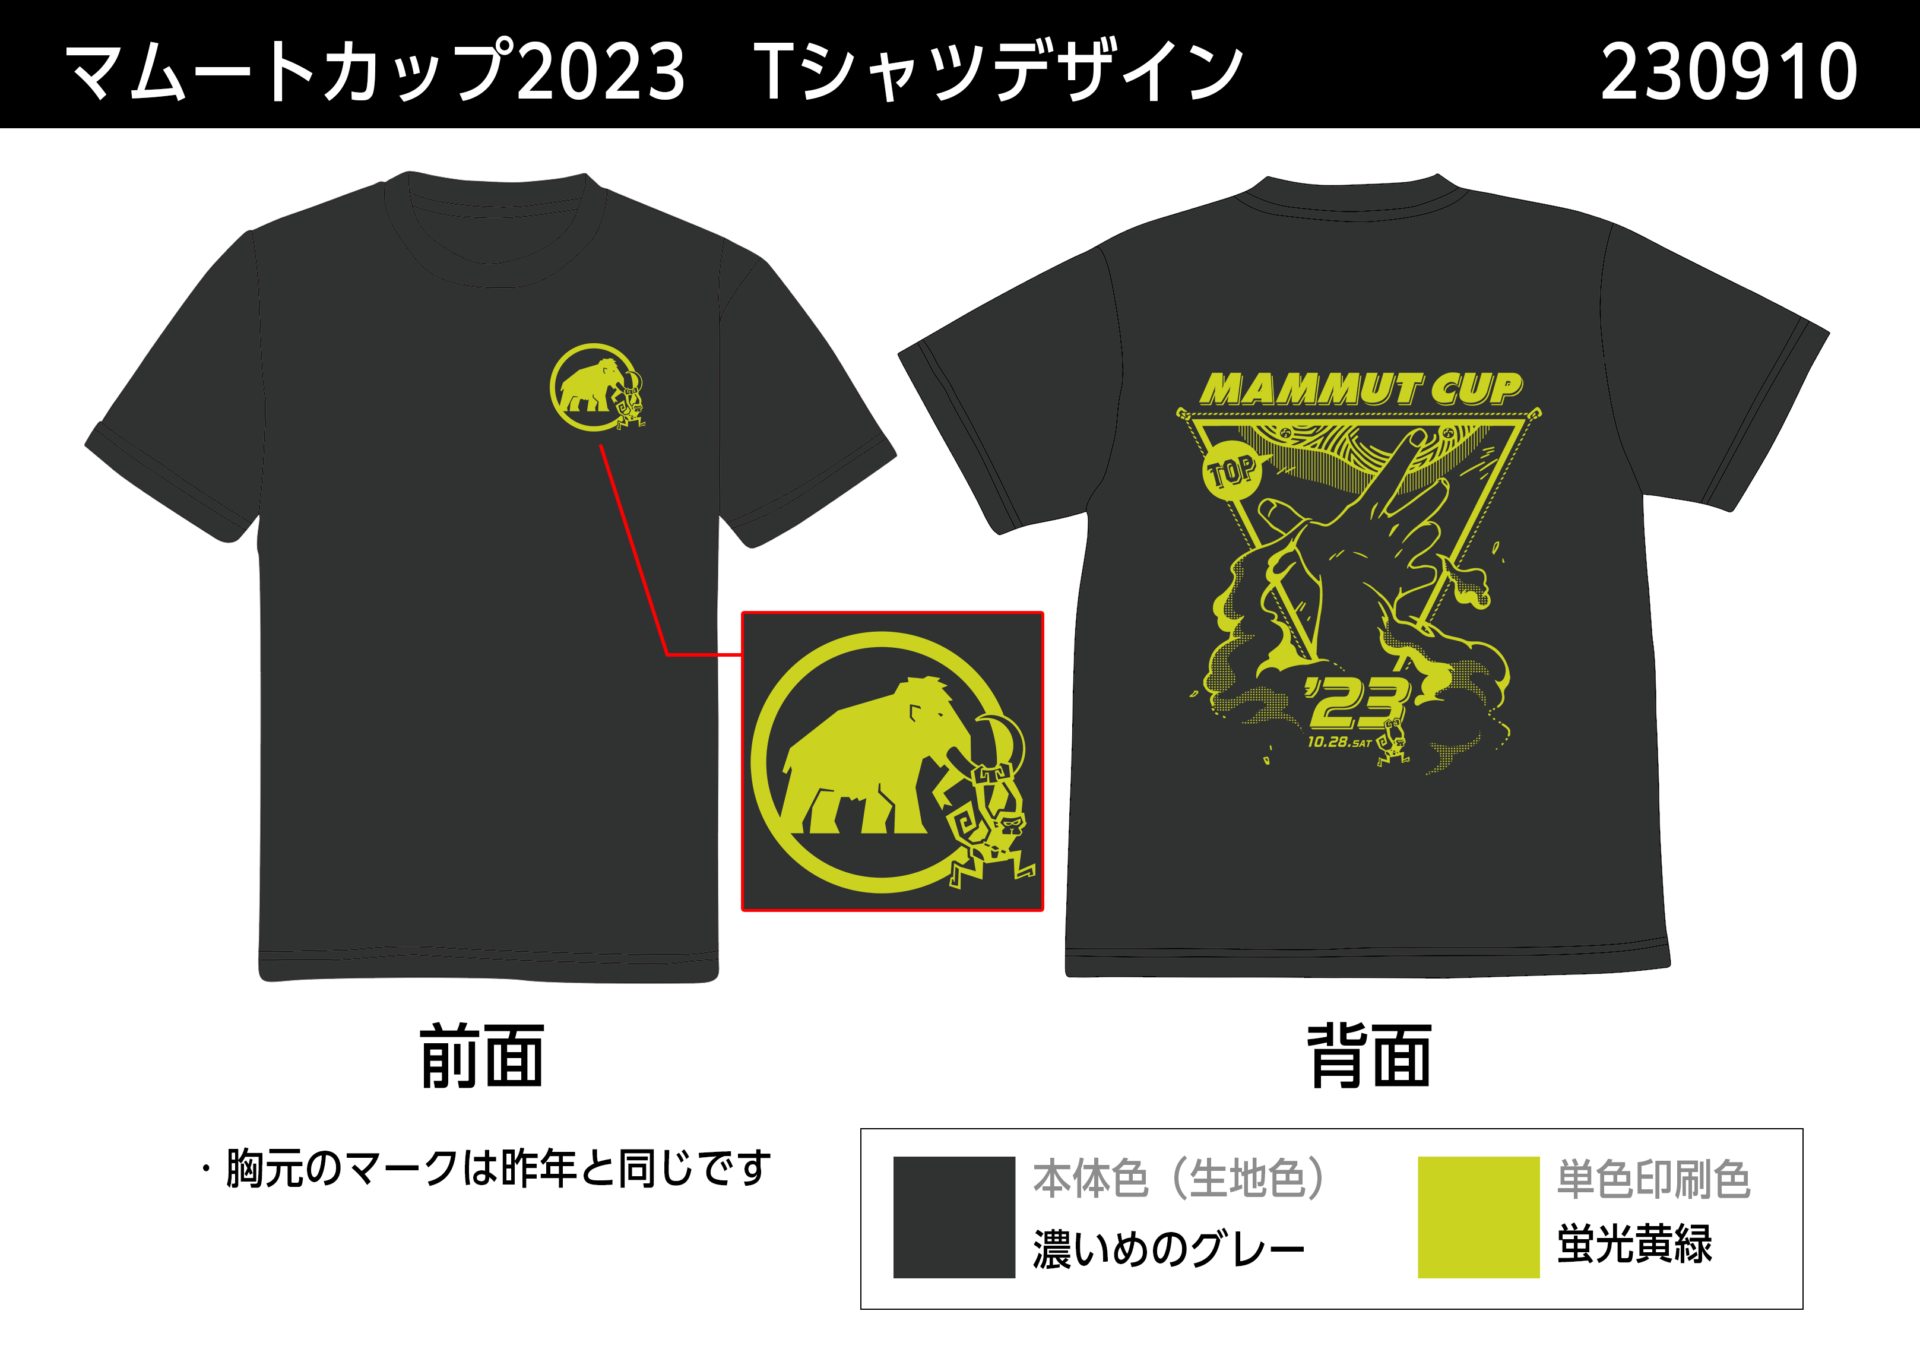 MAMMUT CUP 2023 オリジナルTシャツ一般販売について